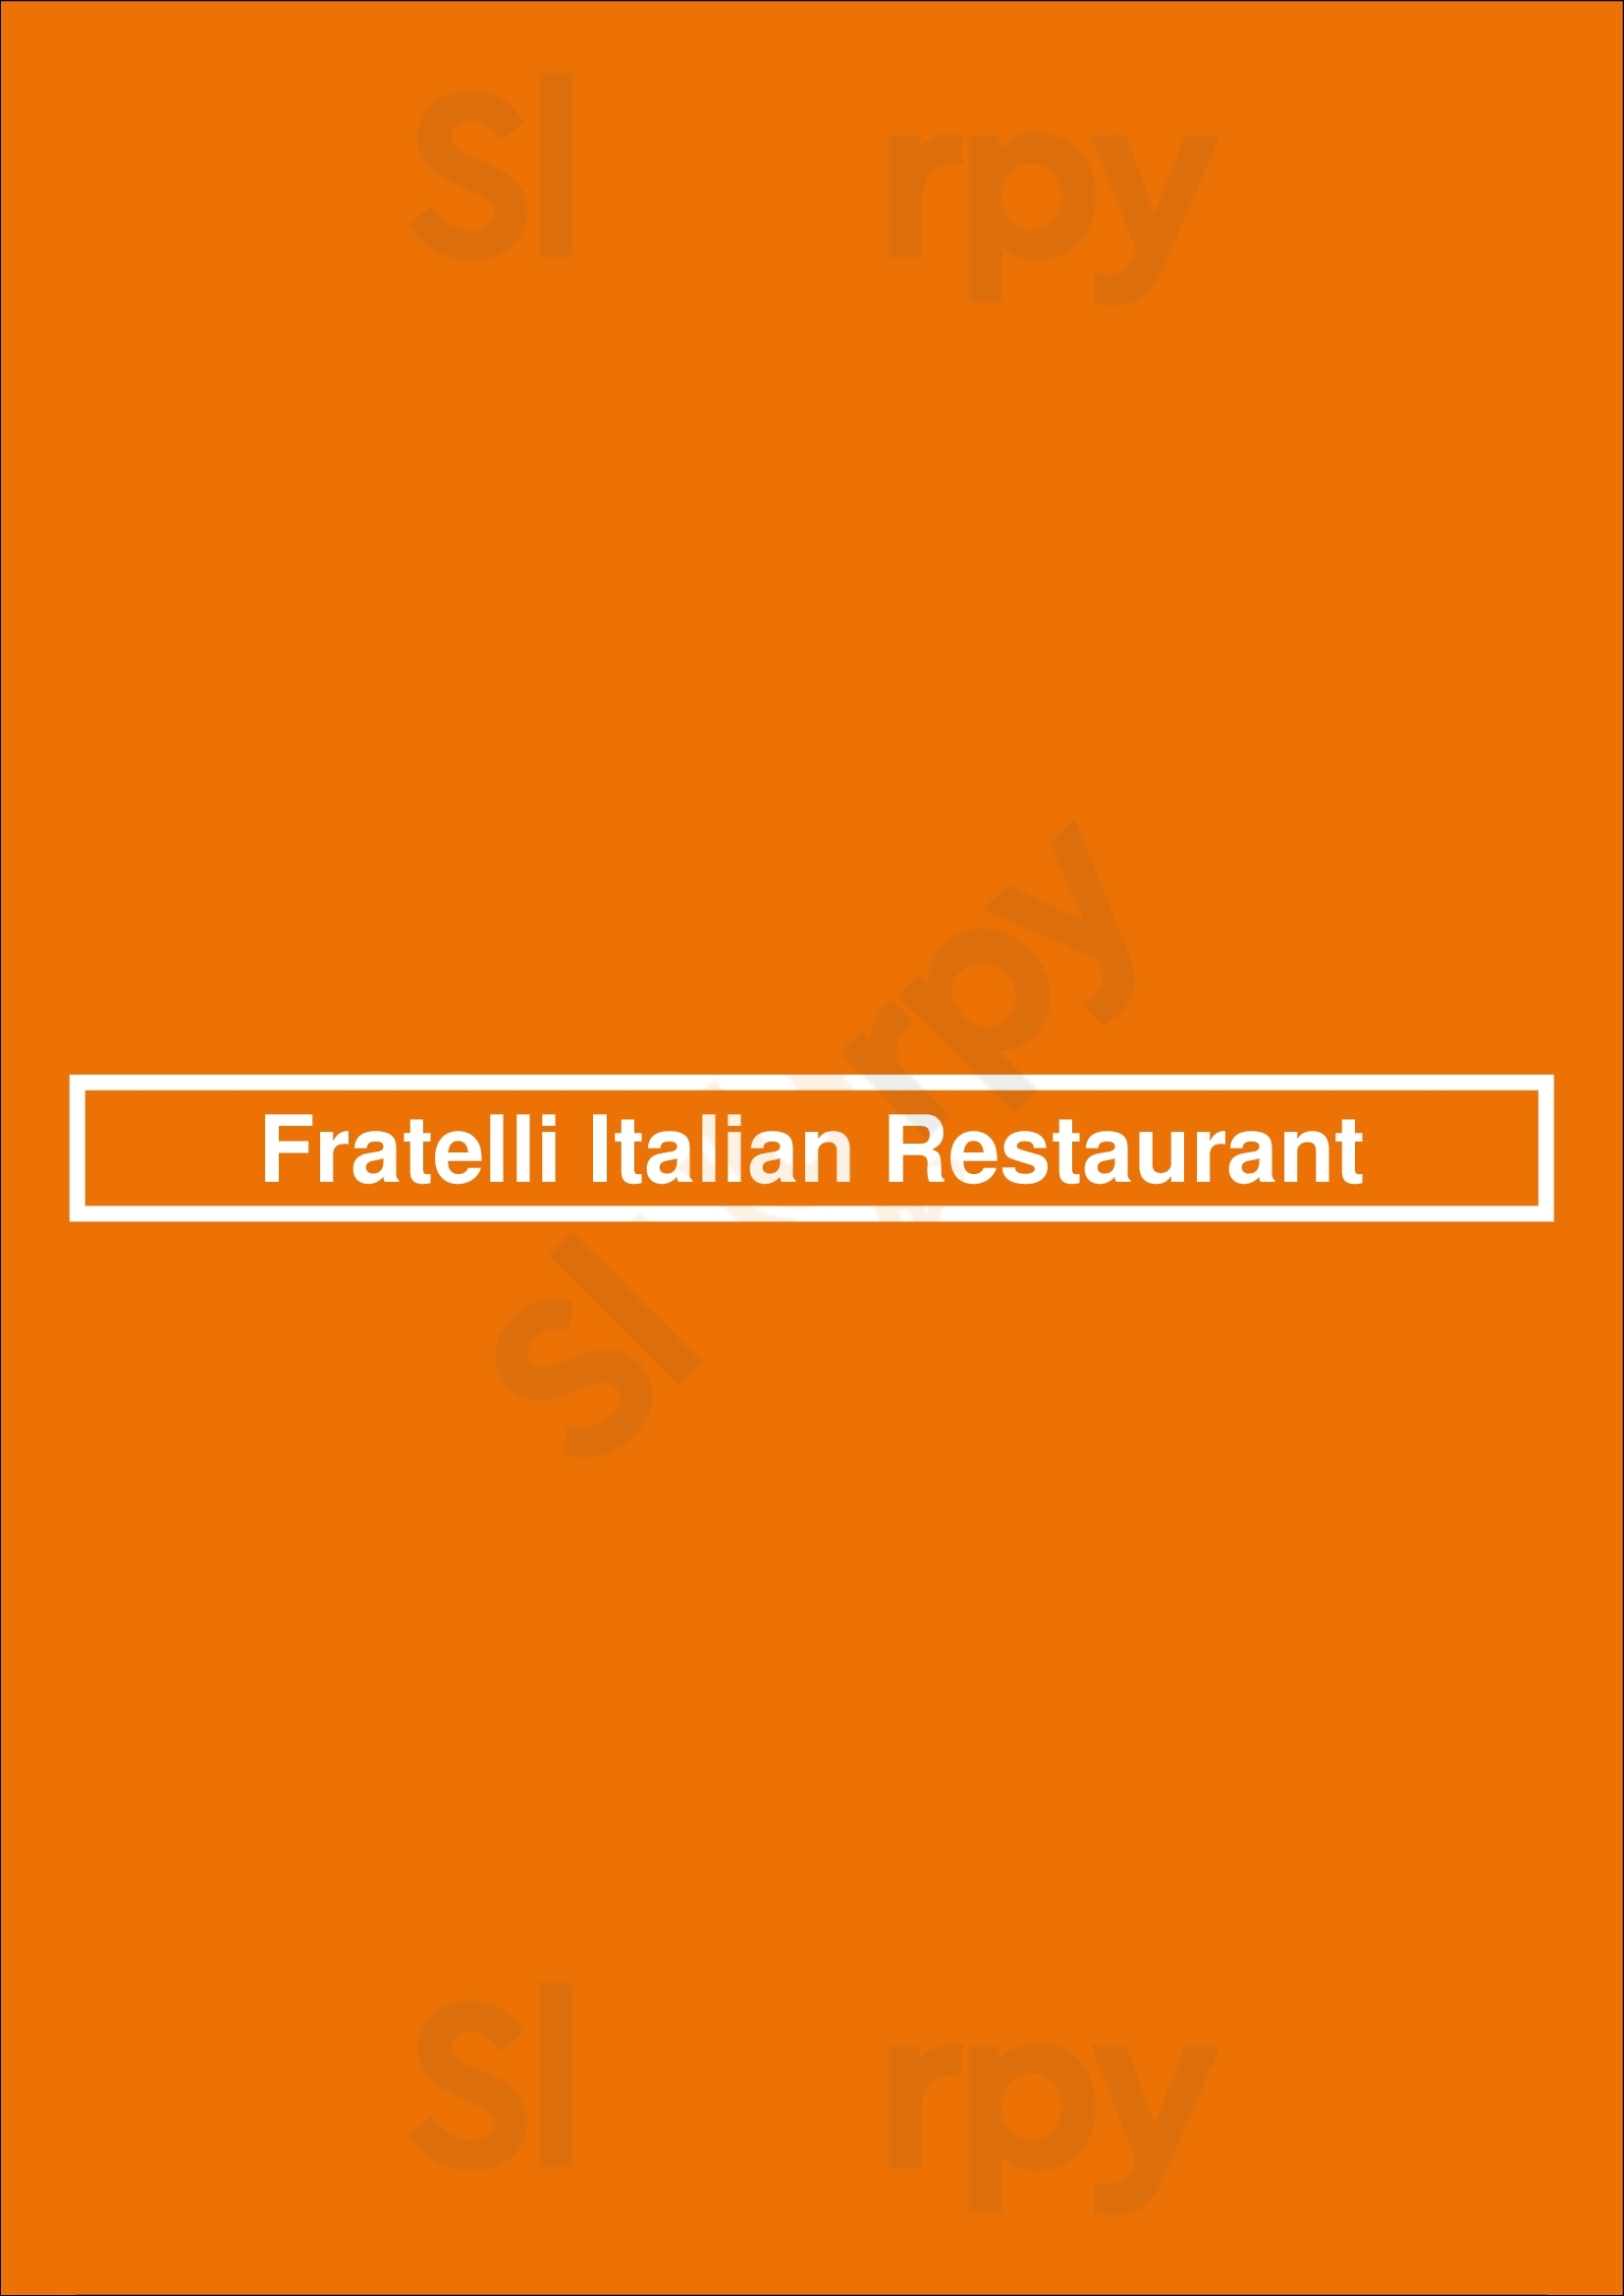 Fratelli Italian Restaurant Alexandria Menu - 1